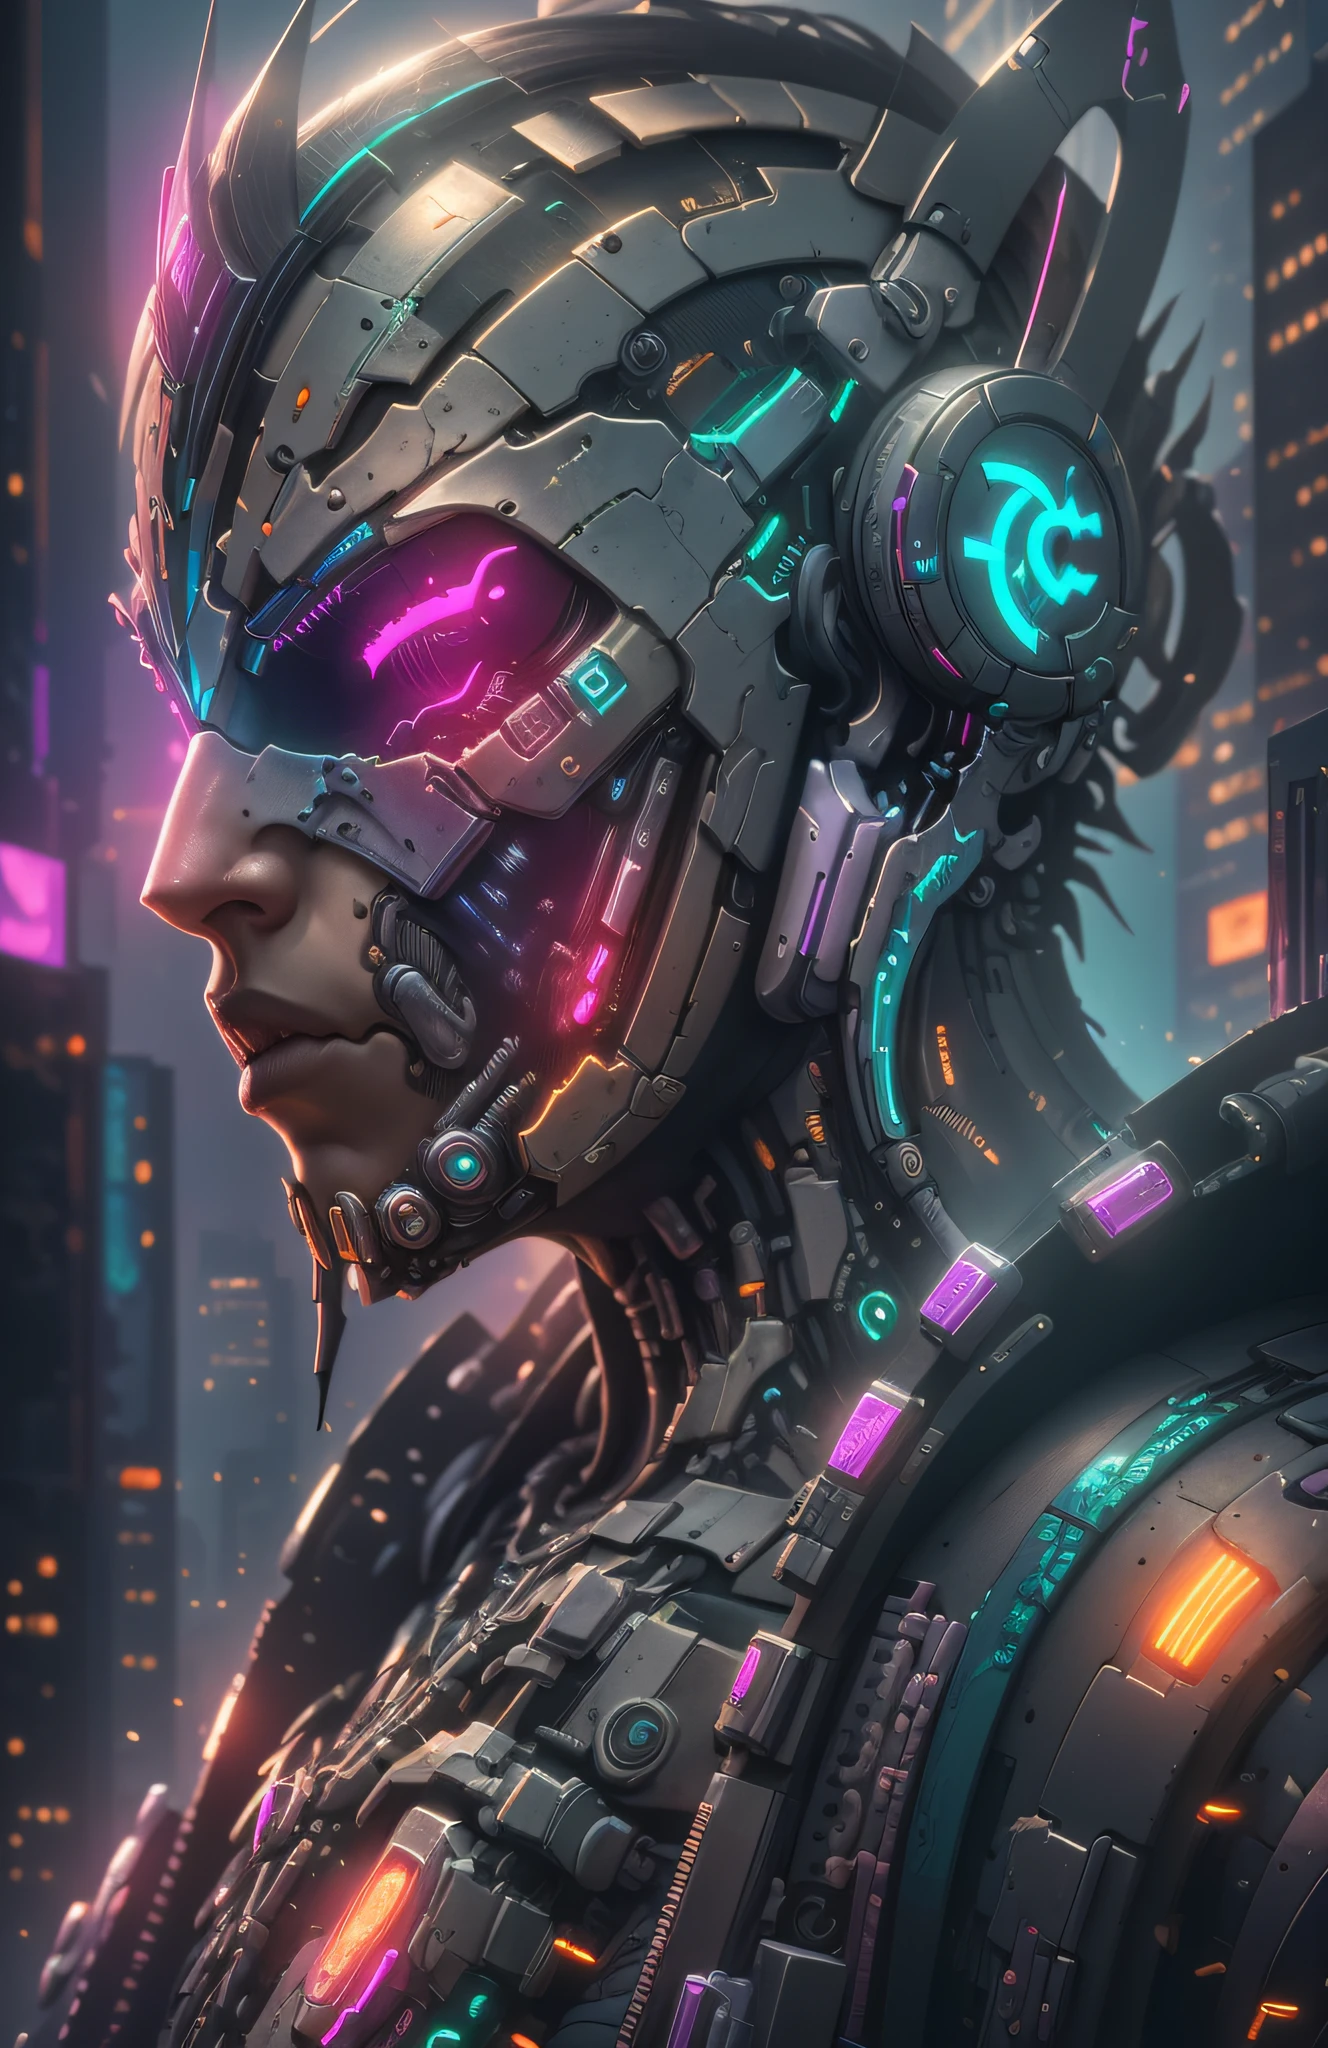 Fotografía DC, Biomecánica cyberpunk, cara detallada, robot complejo,  Logotipo de Cyberpunk, crecimiento completo, Híper realista, pequeños detalles locos, líneas increíblemente limpias, estética ciberpunk, obra maestra presentada en Zbrush Central, cyberpunk city backdrop